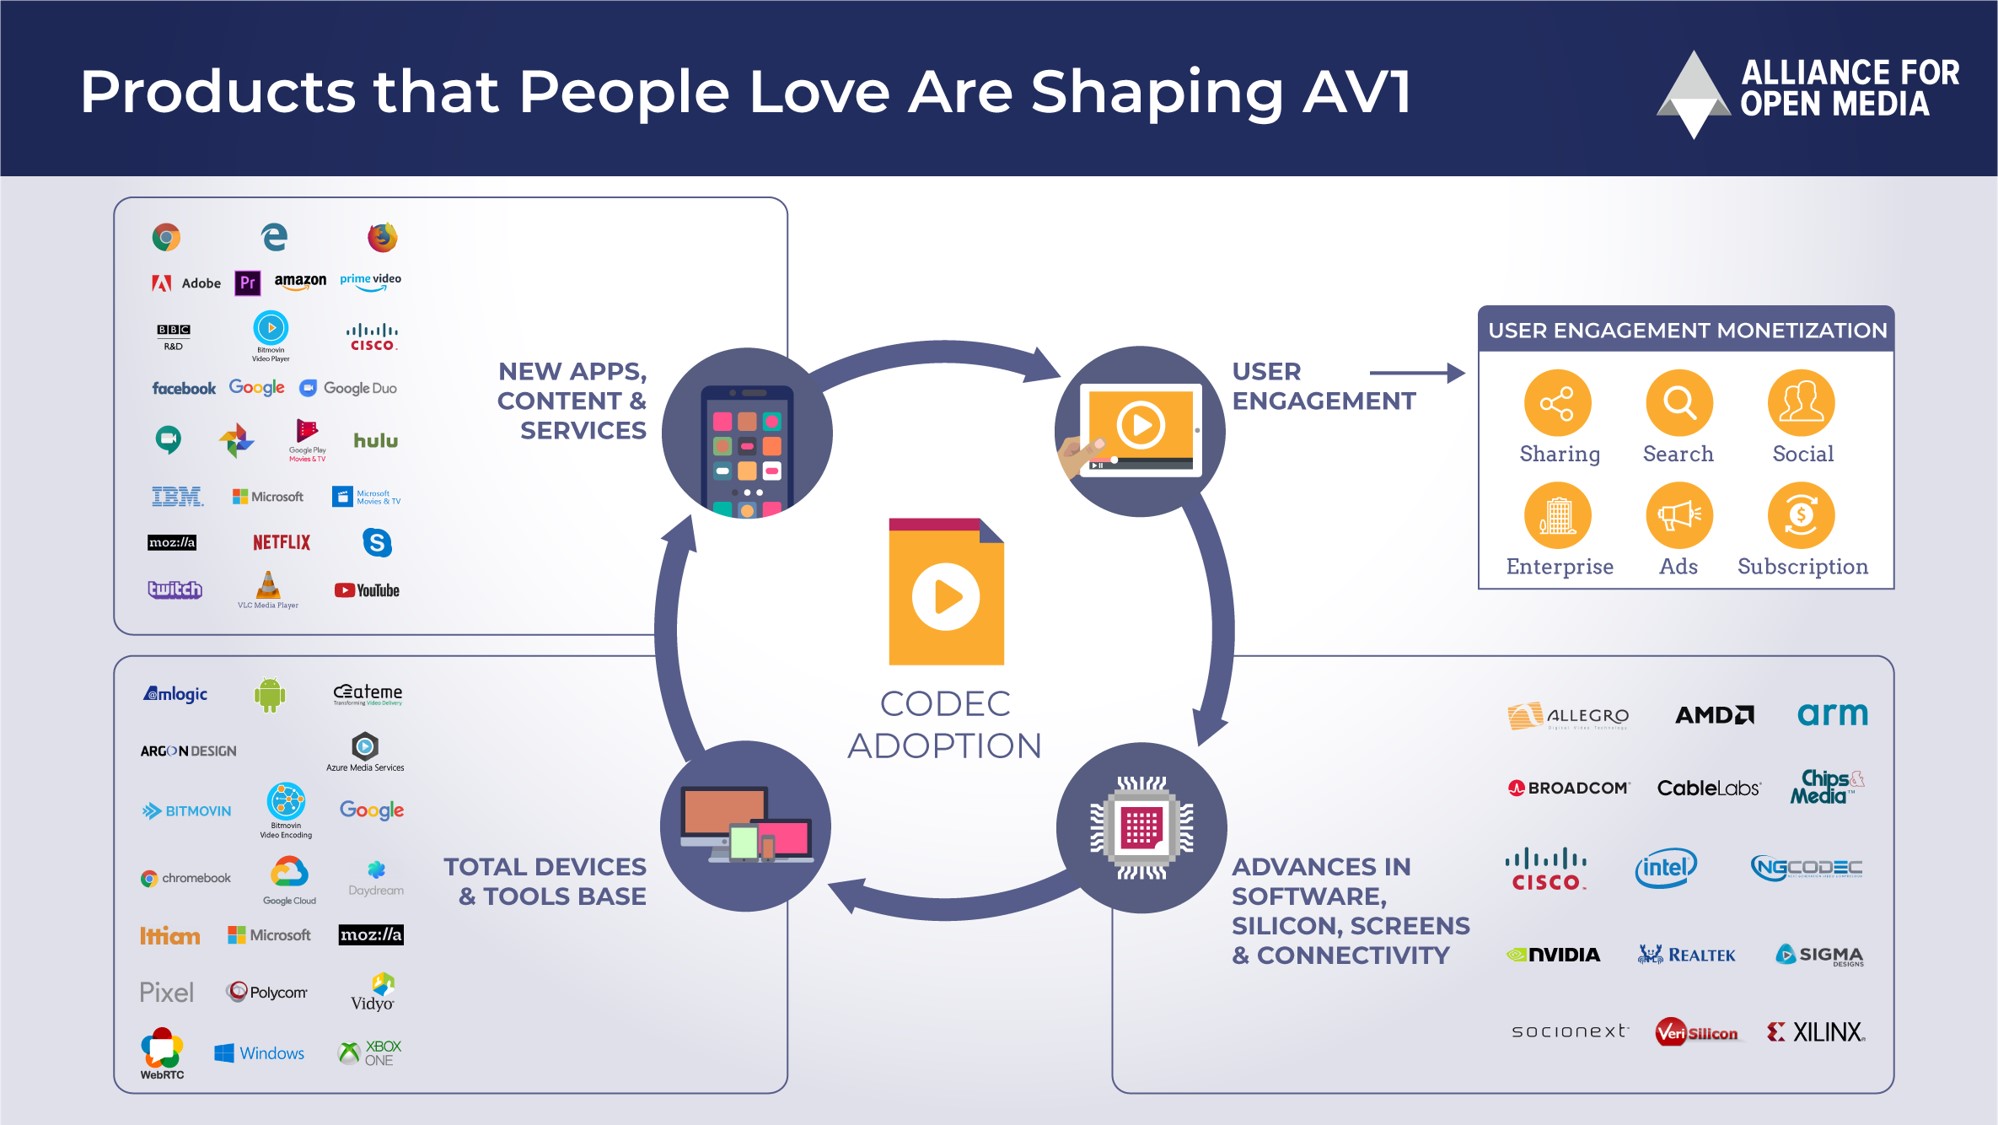 AV1 ecosystem and adoption slide